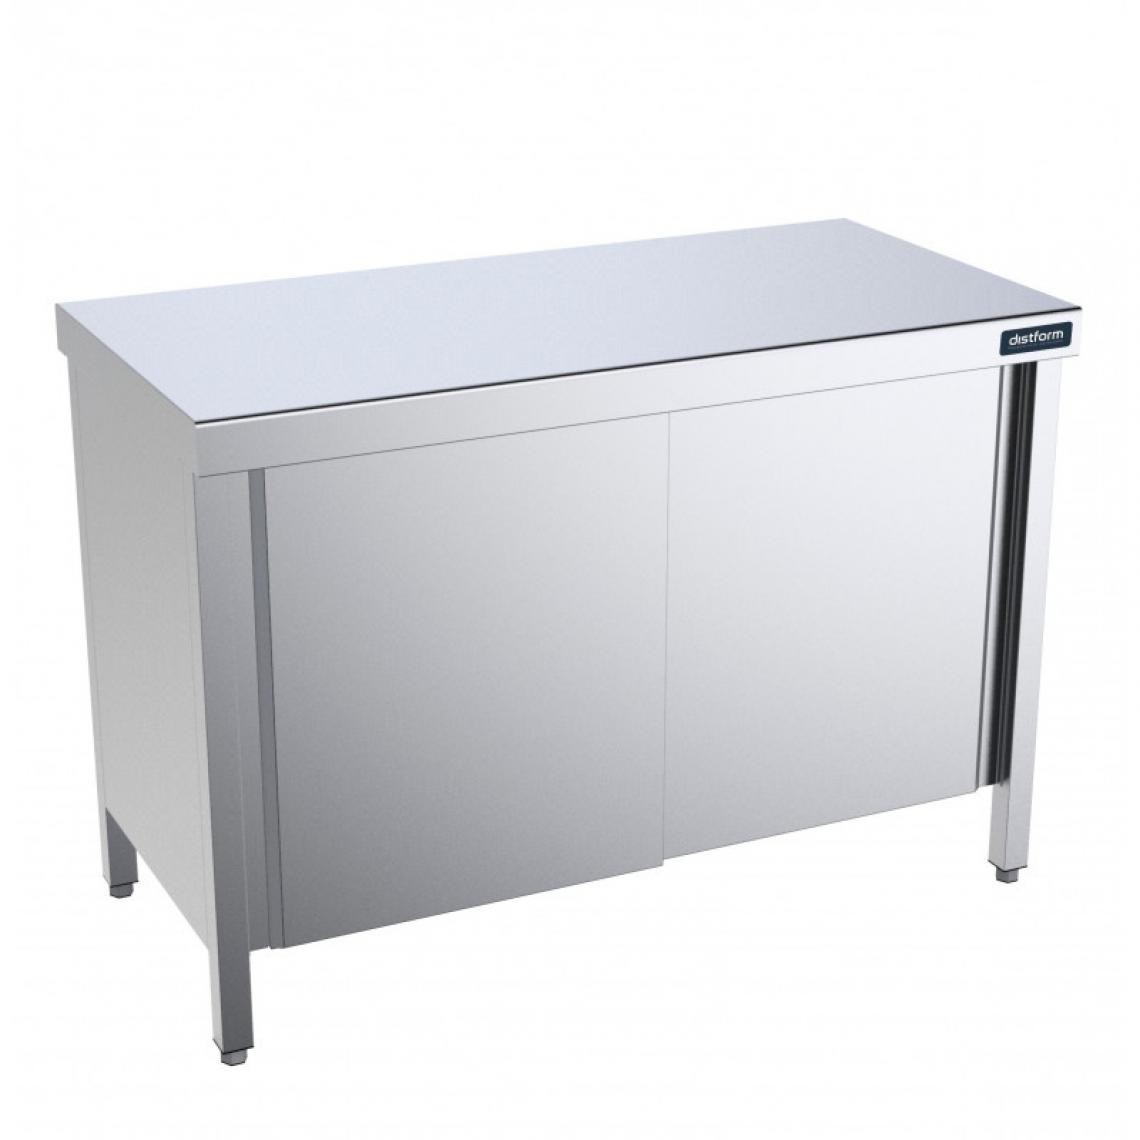 DISTFORM - Table Centrale avec Portes Battantes Profondeur 600mm - Distform - Acier inoxydable1200x600 - Tables à manger